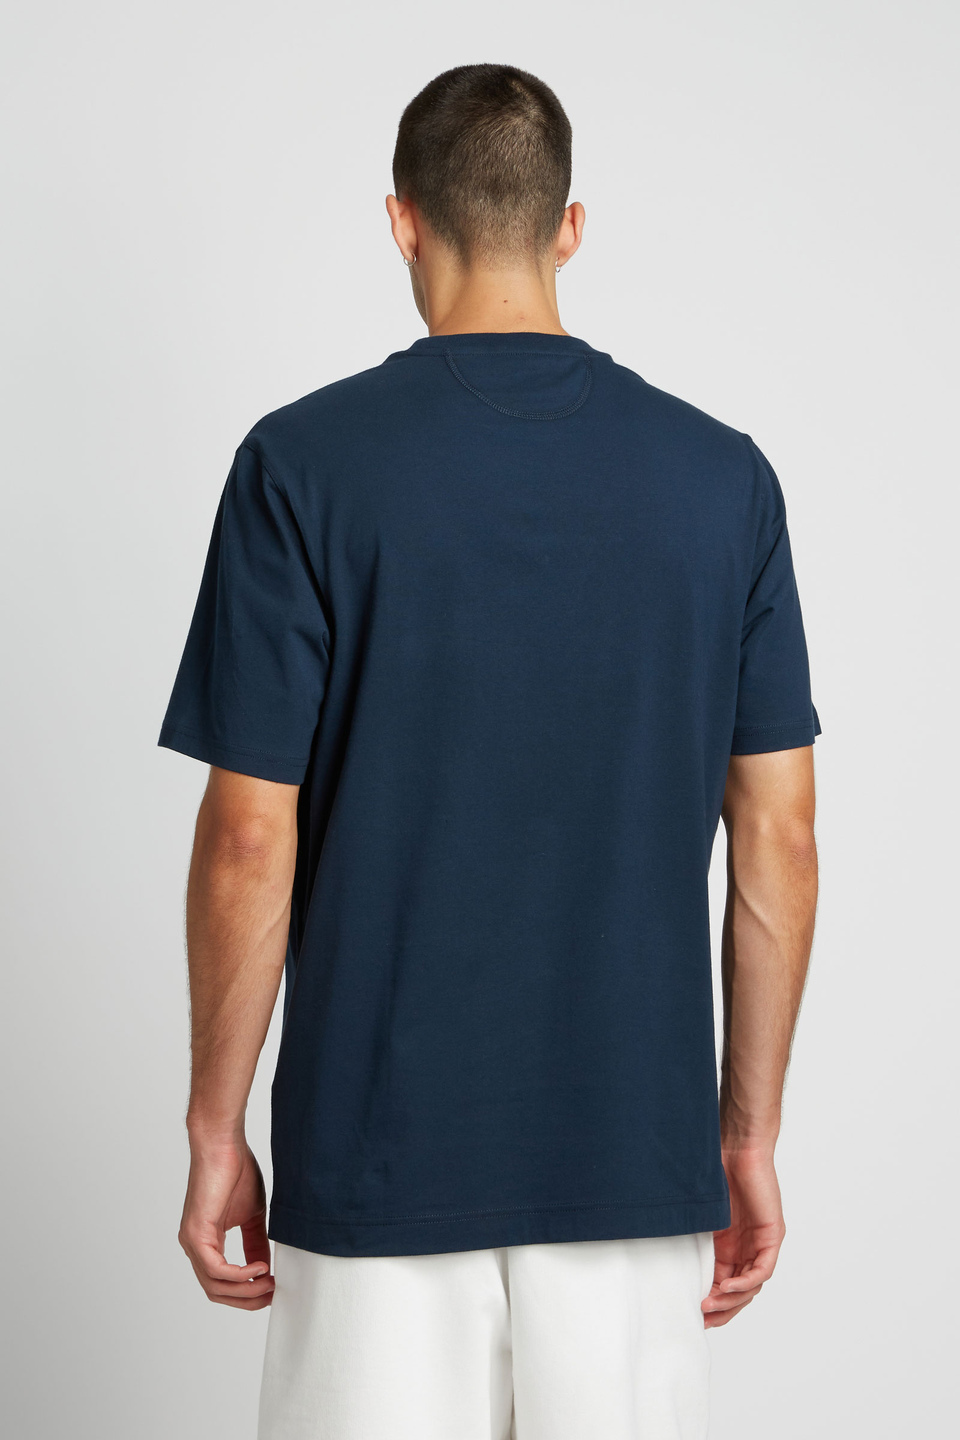 Herren-T-Shirt mit kurzem Arm aus 100 % Baumwolle, oversized - La Martina - Official Online Shop